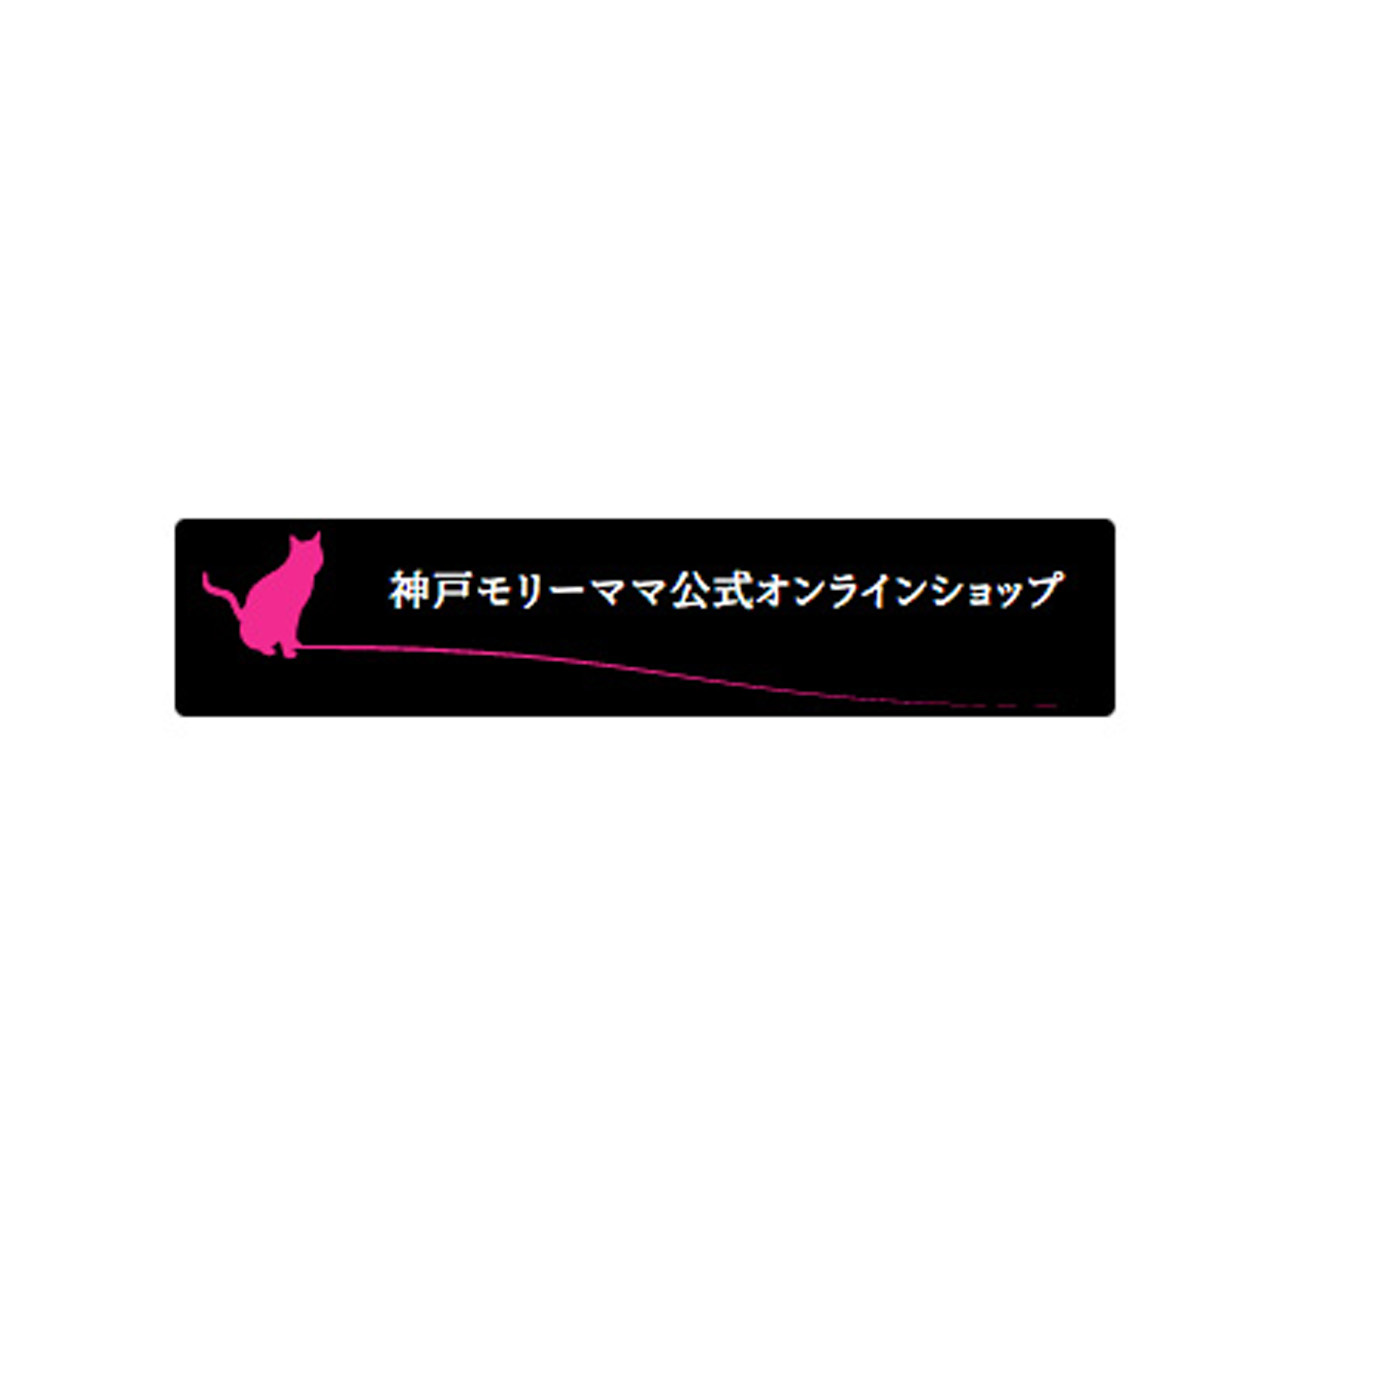 公式オンラインショップ開設のお知らせ - 【公式】神戸モリーママ（コウベ モリーママ）